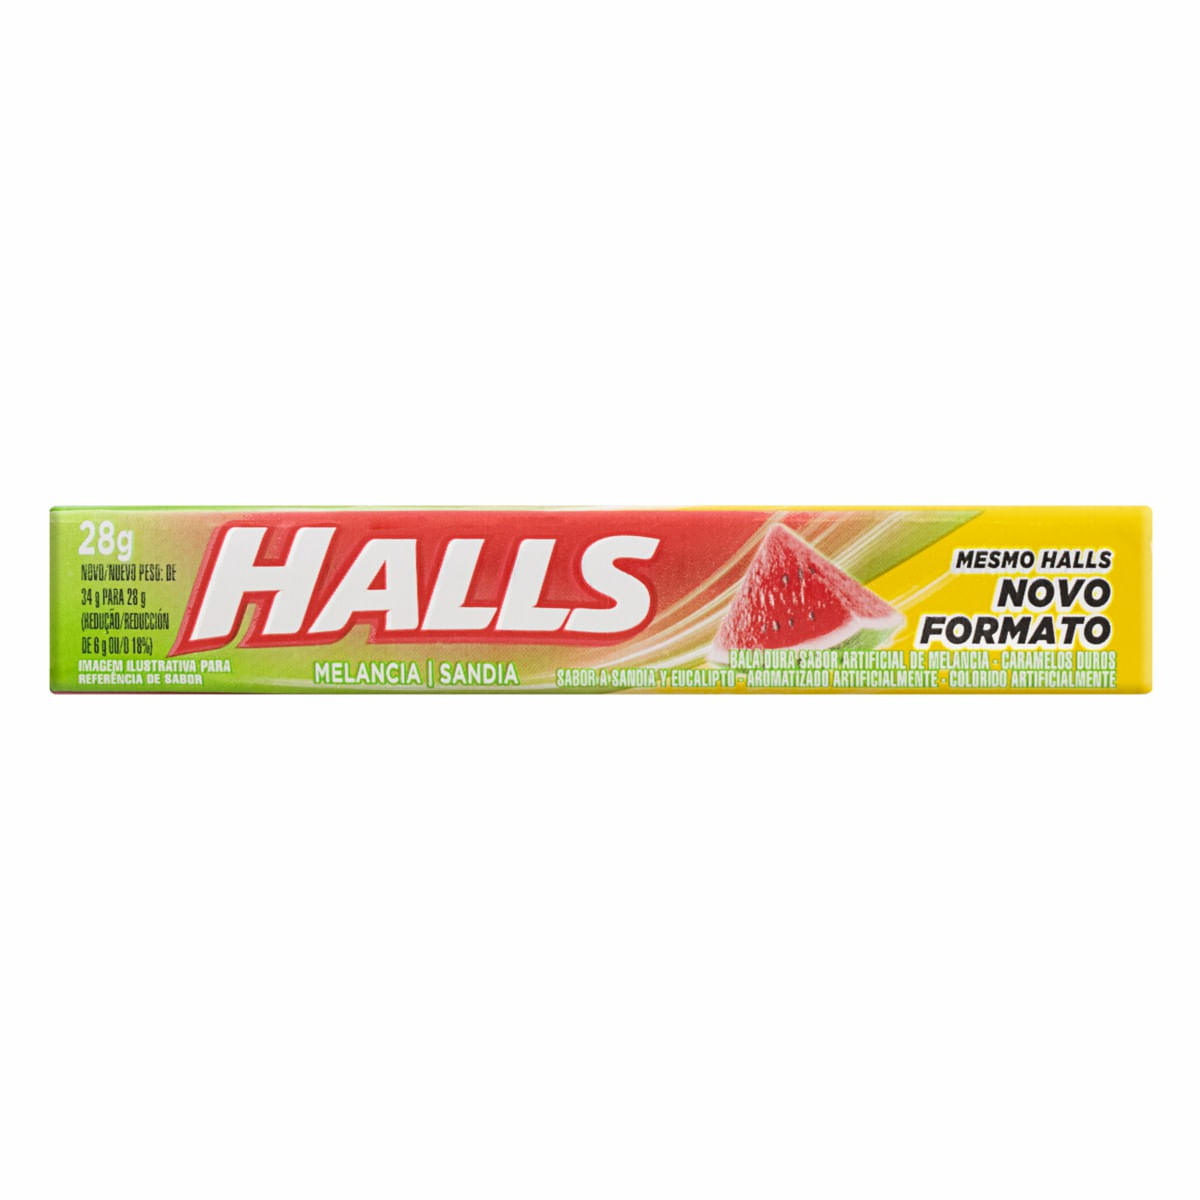 Bala Halls Melancia 28g - Halls